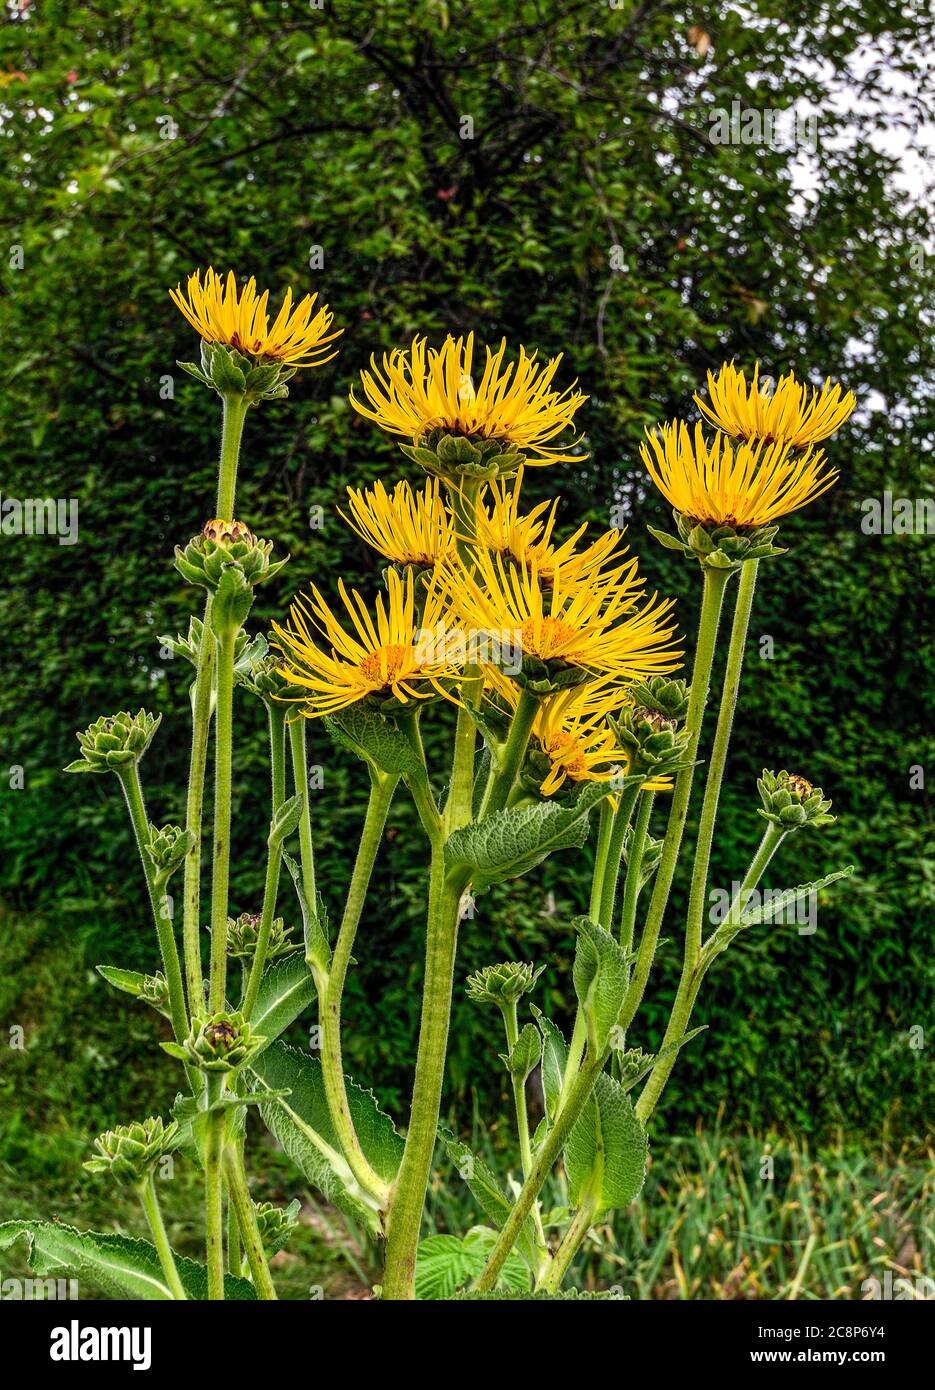 Fleurs jaunes de plante médicinale Inula helenium ou eleclampane dans la prairie d'été. Également connu sous le nom de Horse-Heal, Elfdock ou Helenium. Sauvage en pleine floraison Banque D'Images